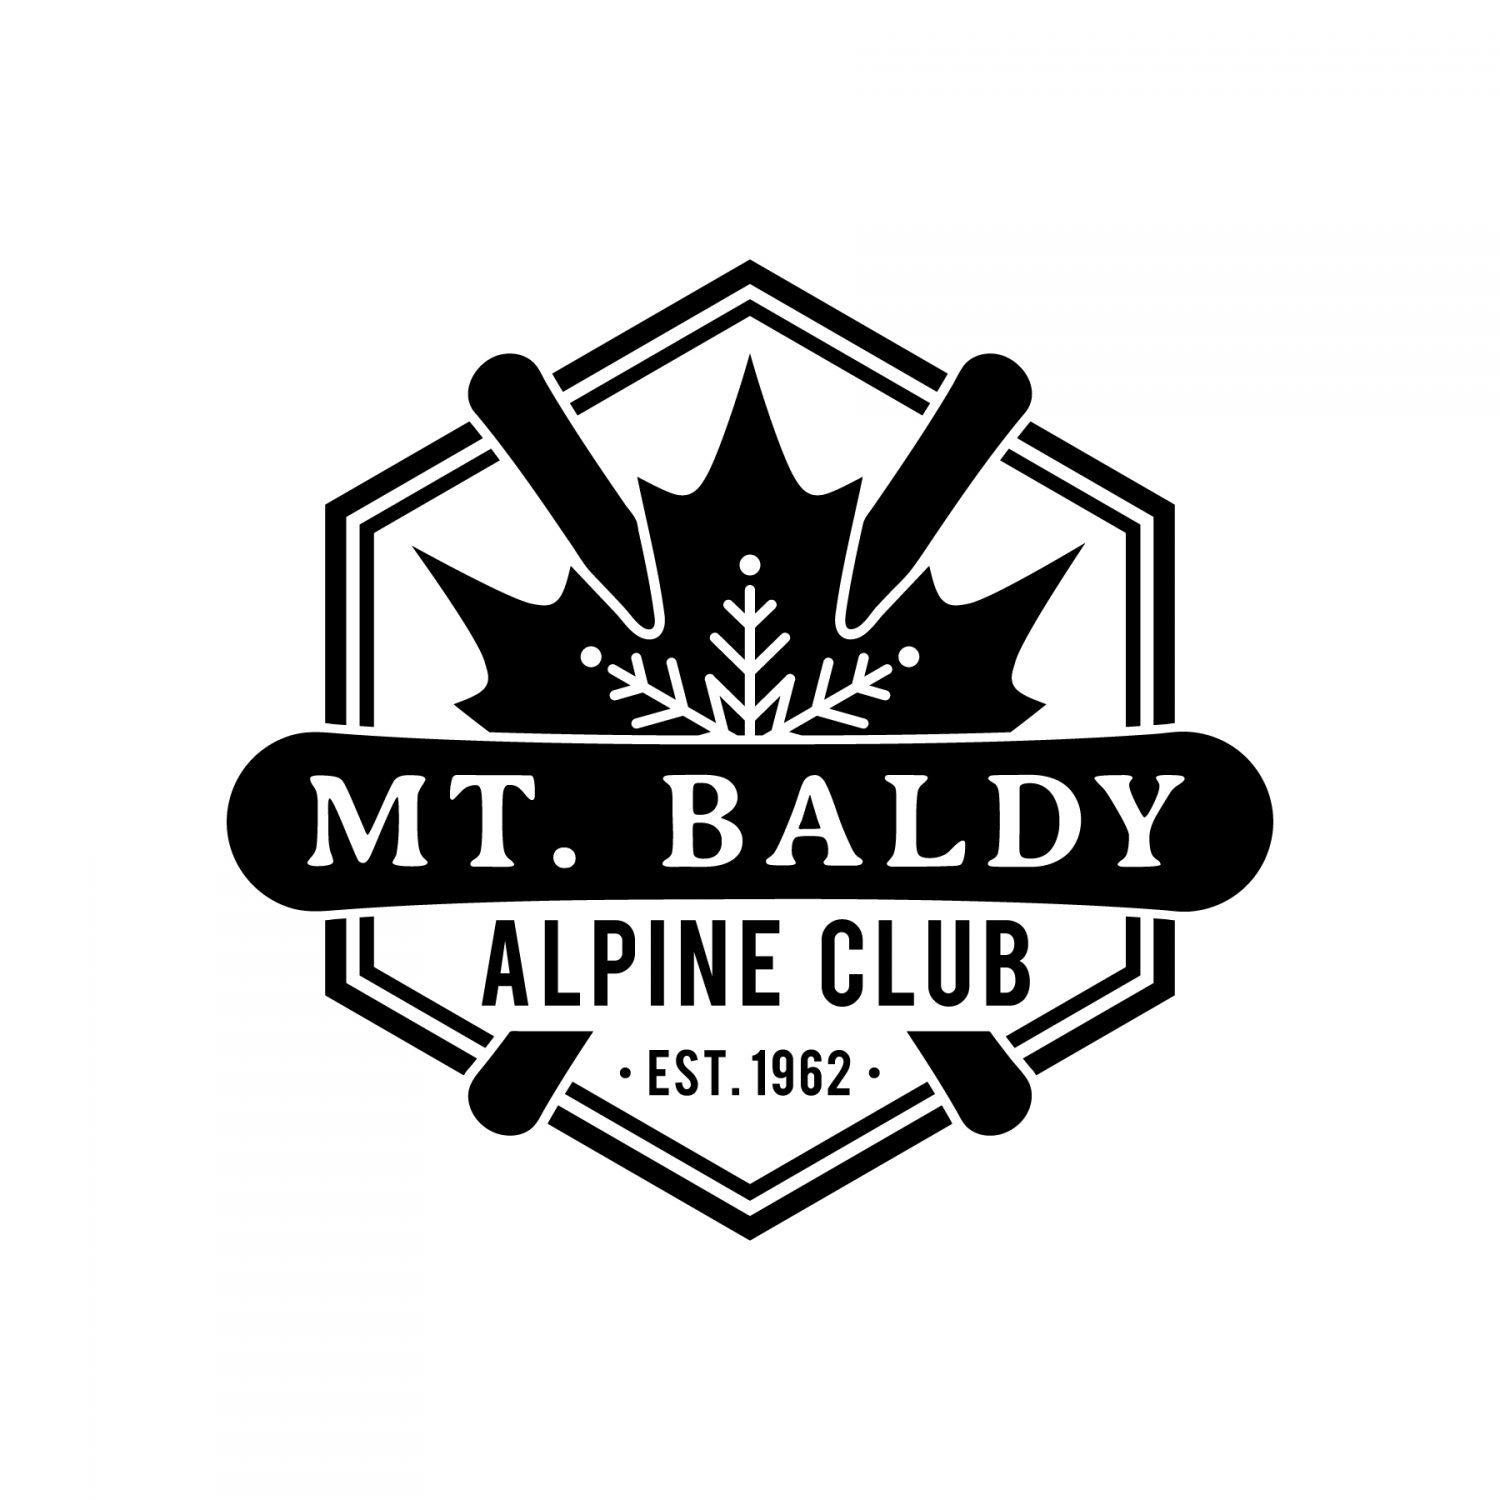 Mt. Baldy Alpine Club